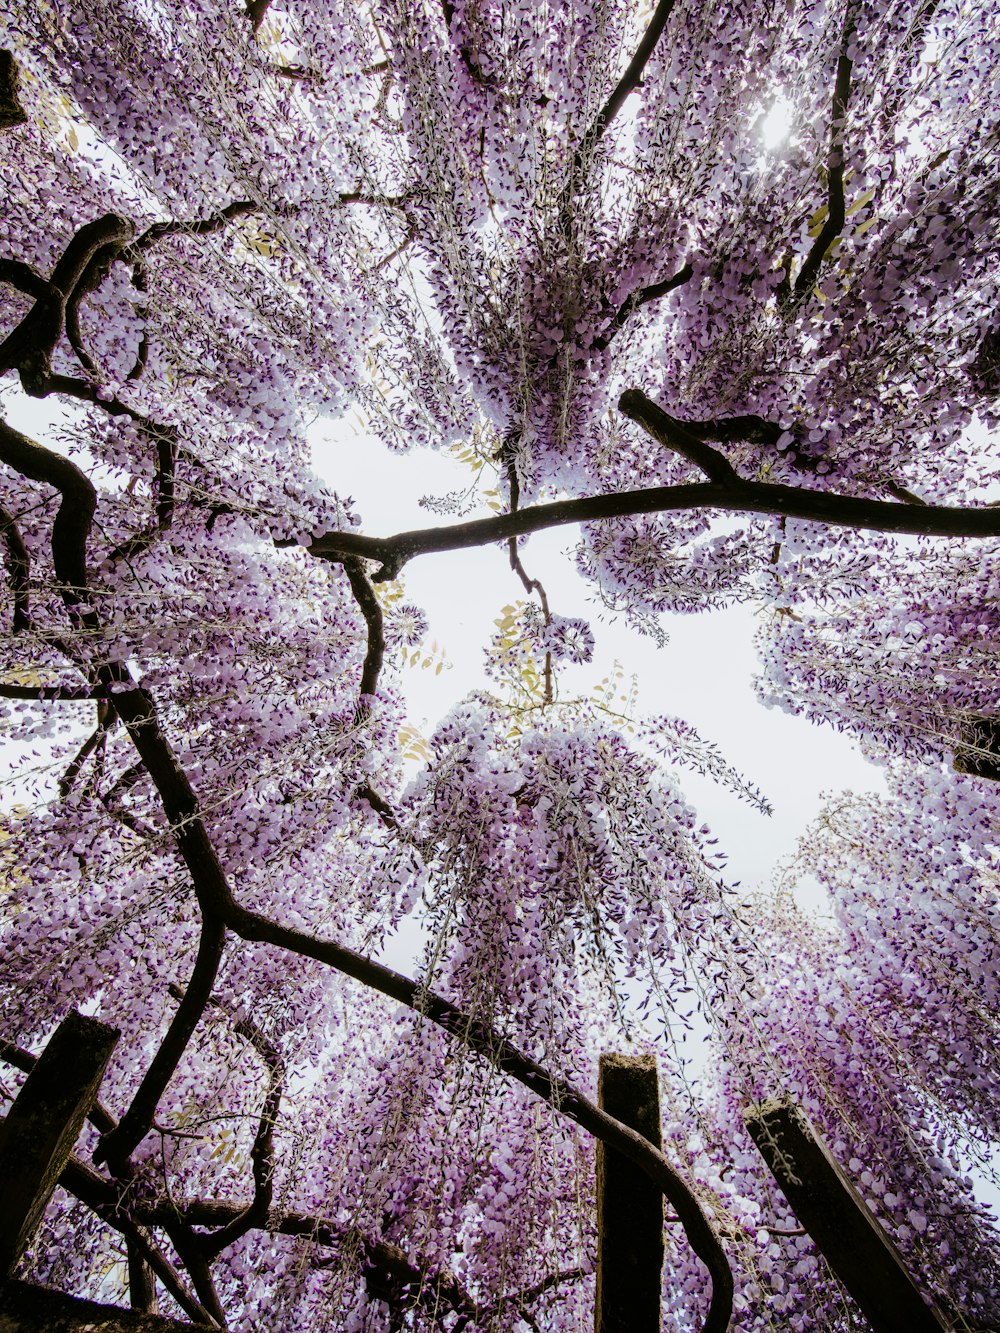 Blick auf das Blätterdach eines lila blühenden Baumes